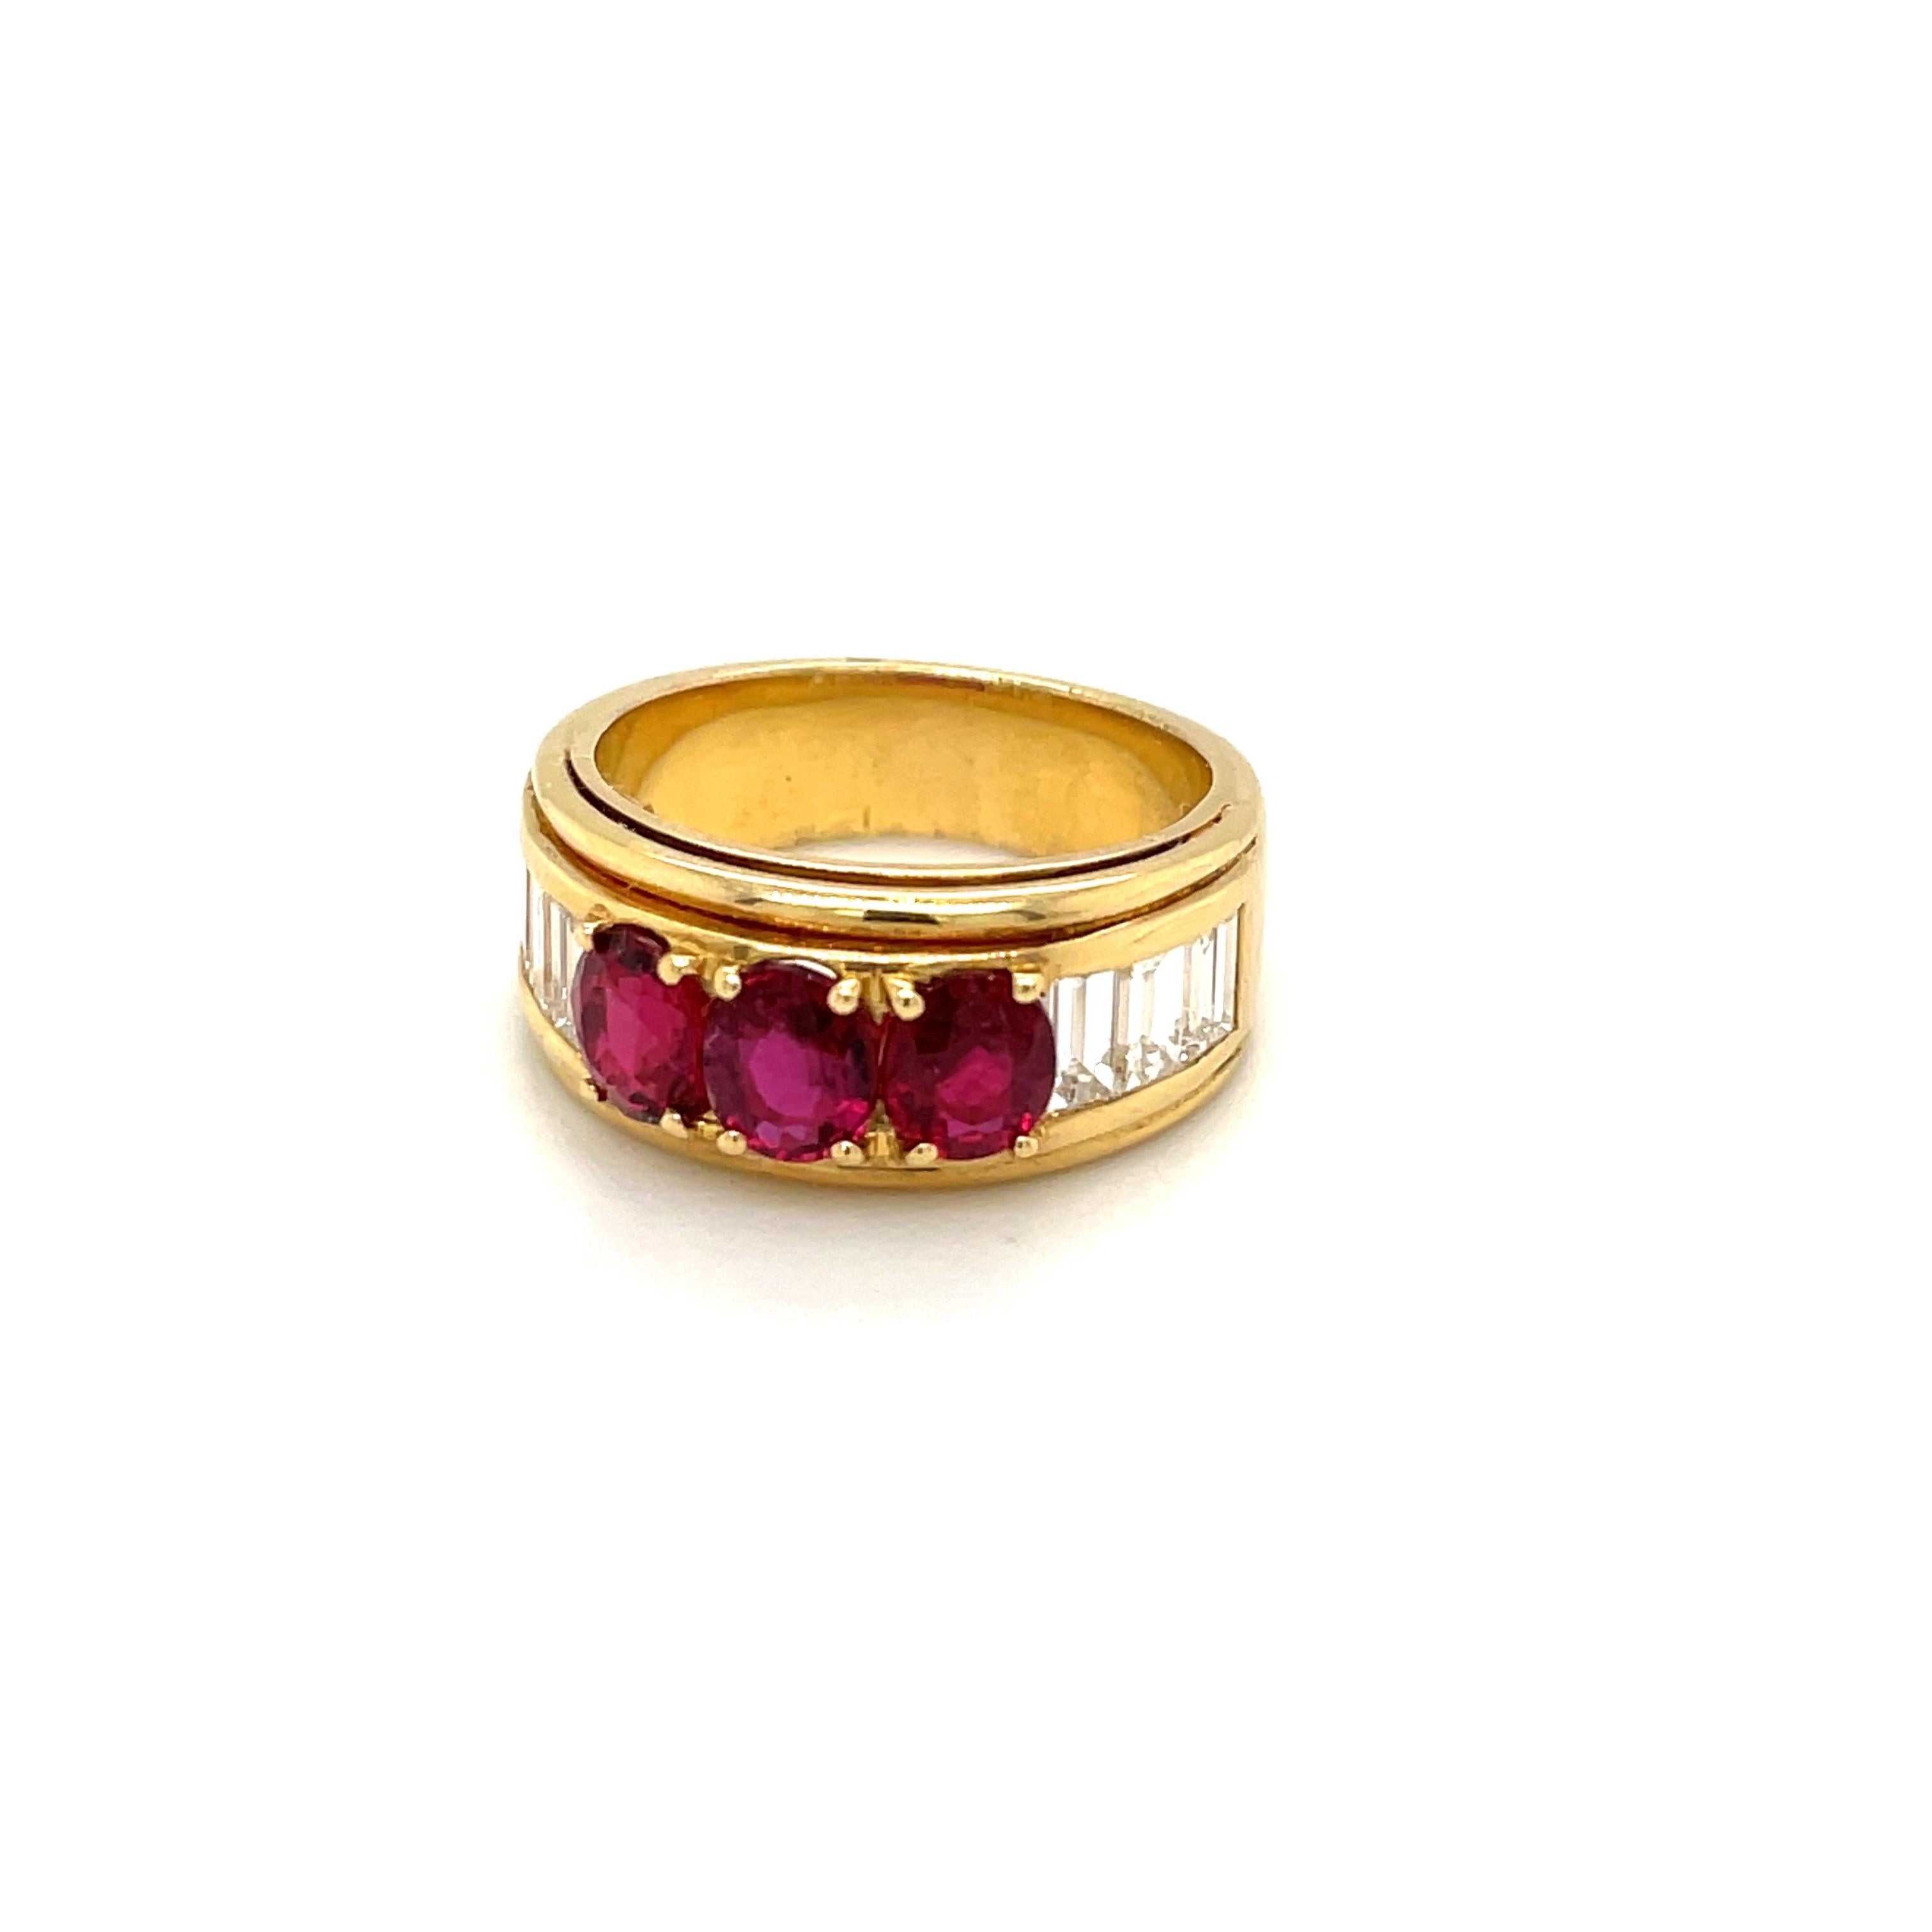 Dieser Ring wurde von dem berühmten italienischen Designer Guiseppe Picchiotti entworfen und ist ein perfektes Beispiel für seine sorgfältige Arbeit. Dieser Ring aus 18-karätigem Gelbgold ist mit 3 ovalen Rubinen besetzt, die sich über die Oberseite